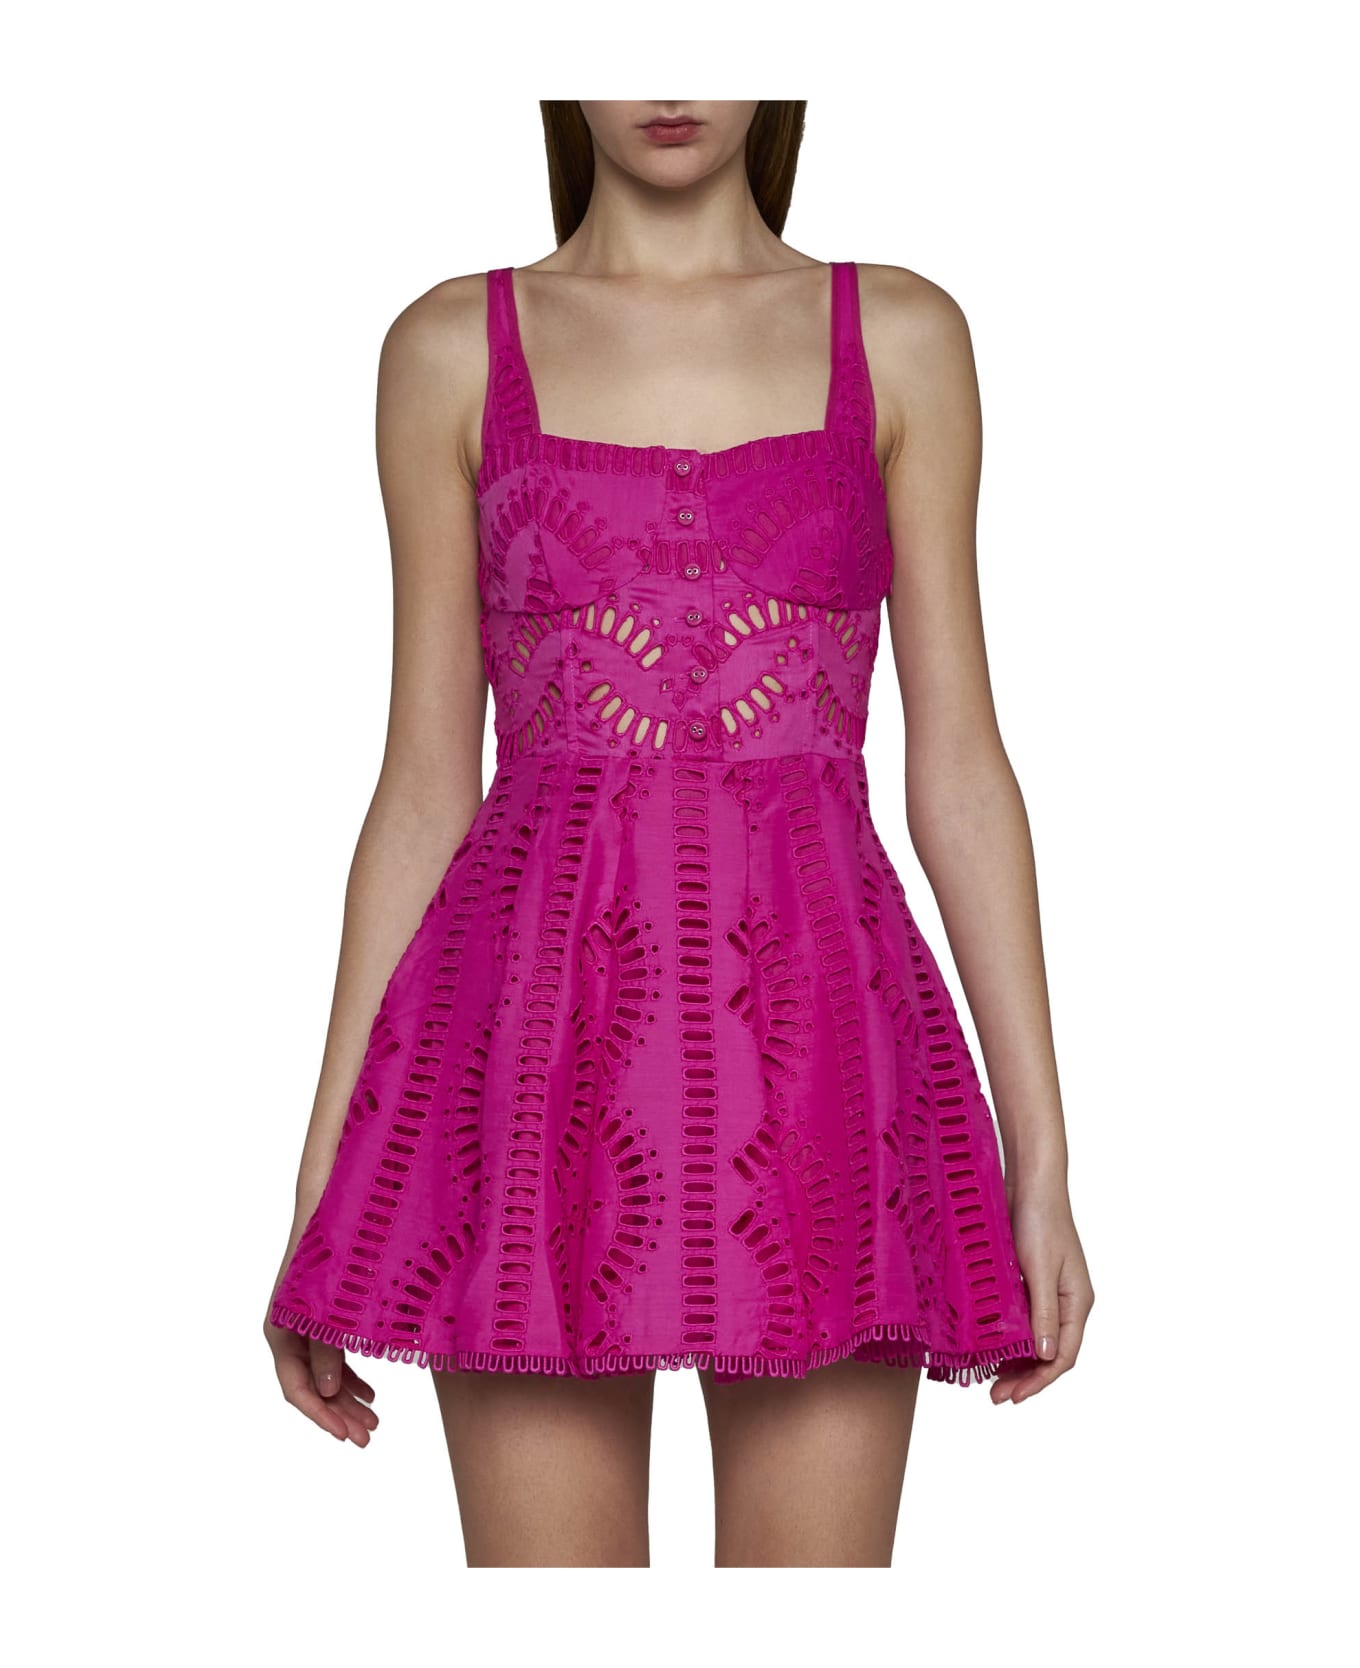 Charo Ruiz Dress - Hot pink